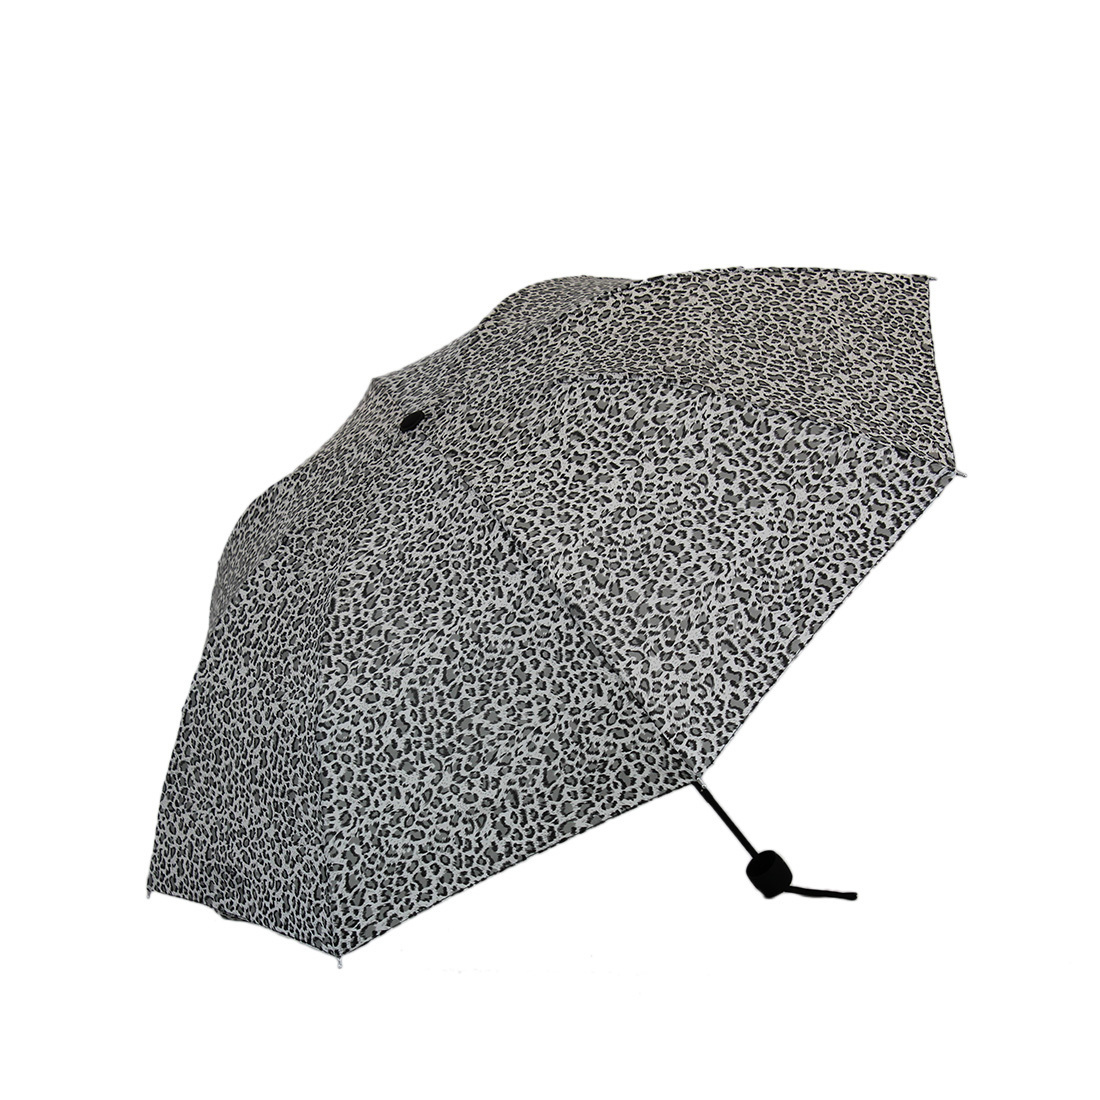 * Leopard design umbrella